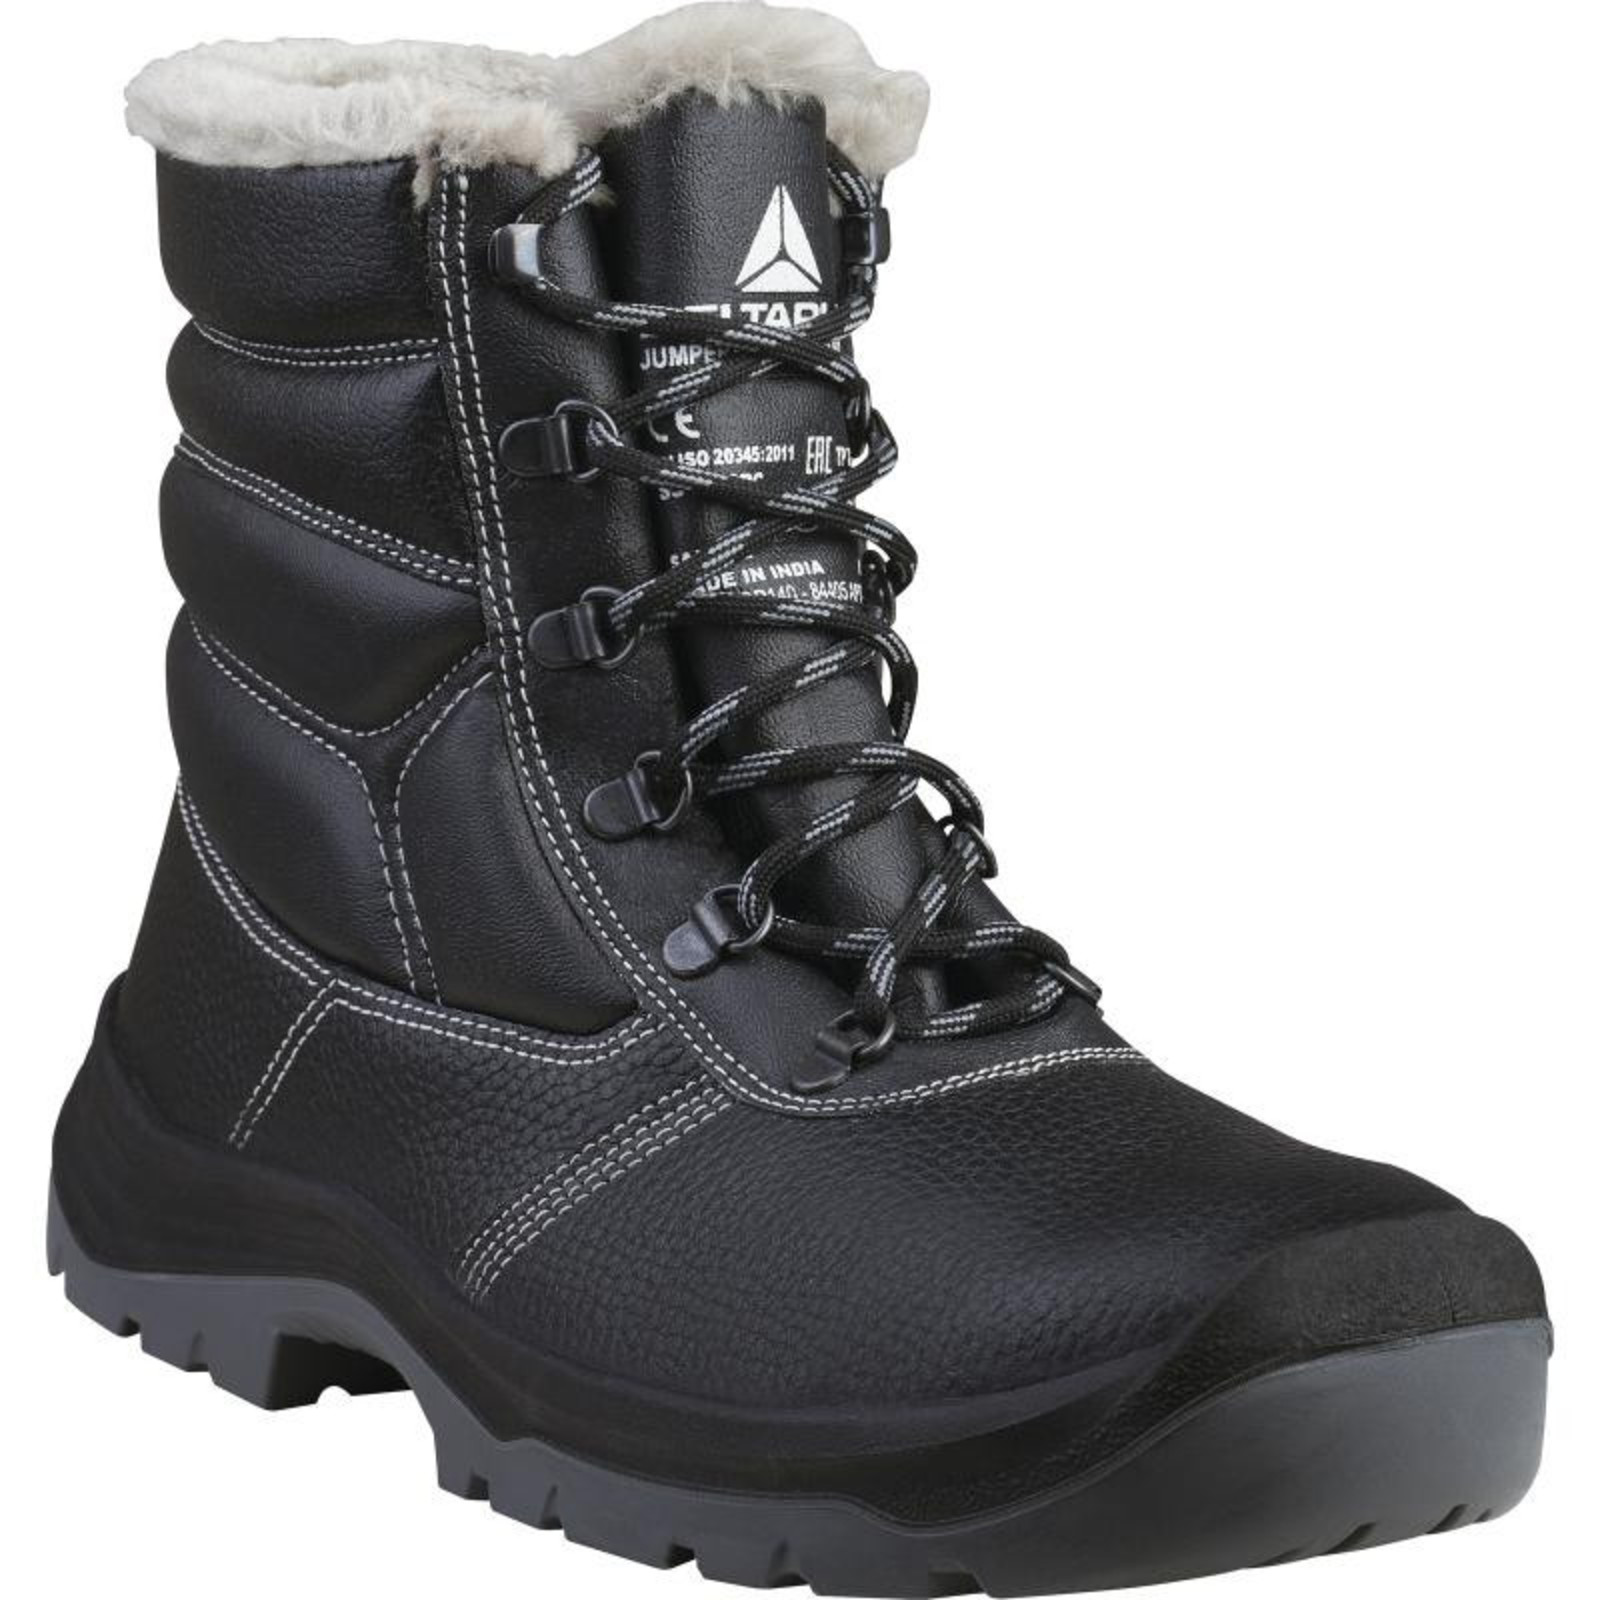 Zimná bezpečnostná obuv Delta Plus Jumper3 S3  - veľkosť: 48, farba: čierna